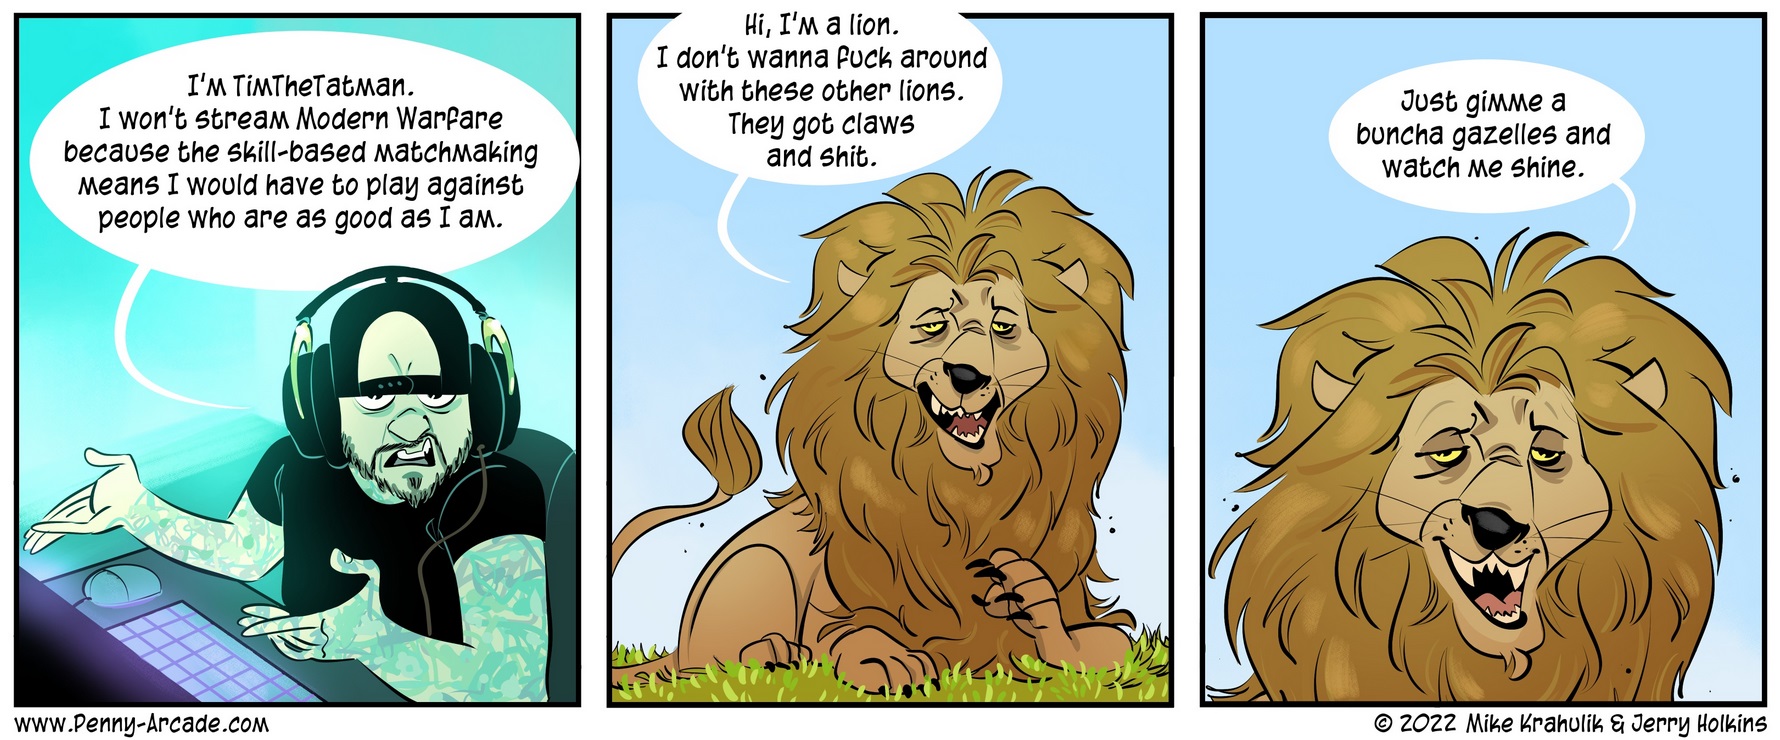 Comic von Penny Arcade über Streamer, die nur gegen Schwächere antreten wollen und das wird mit einem Löwen verglichen